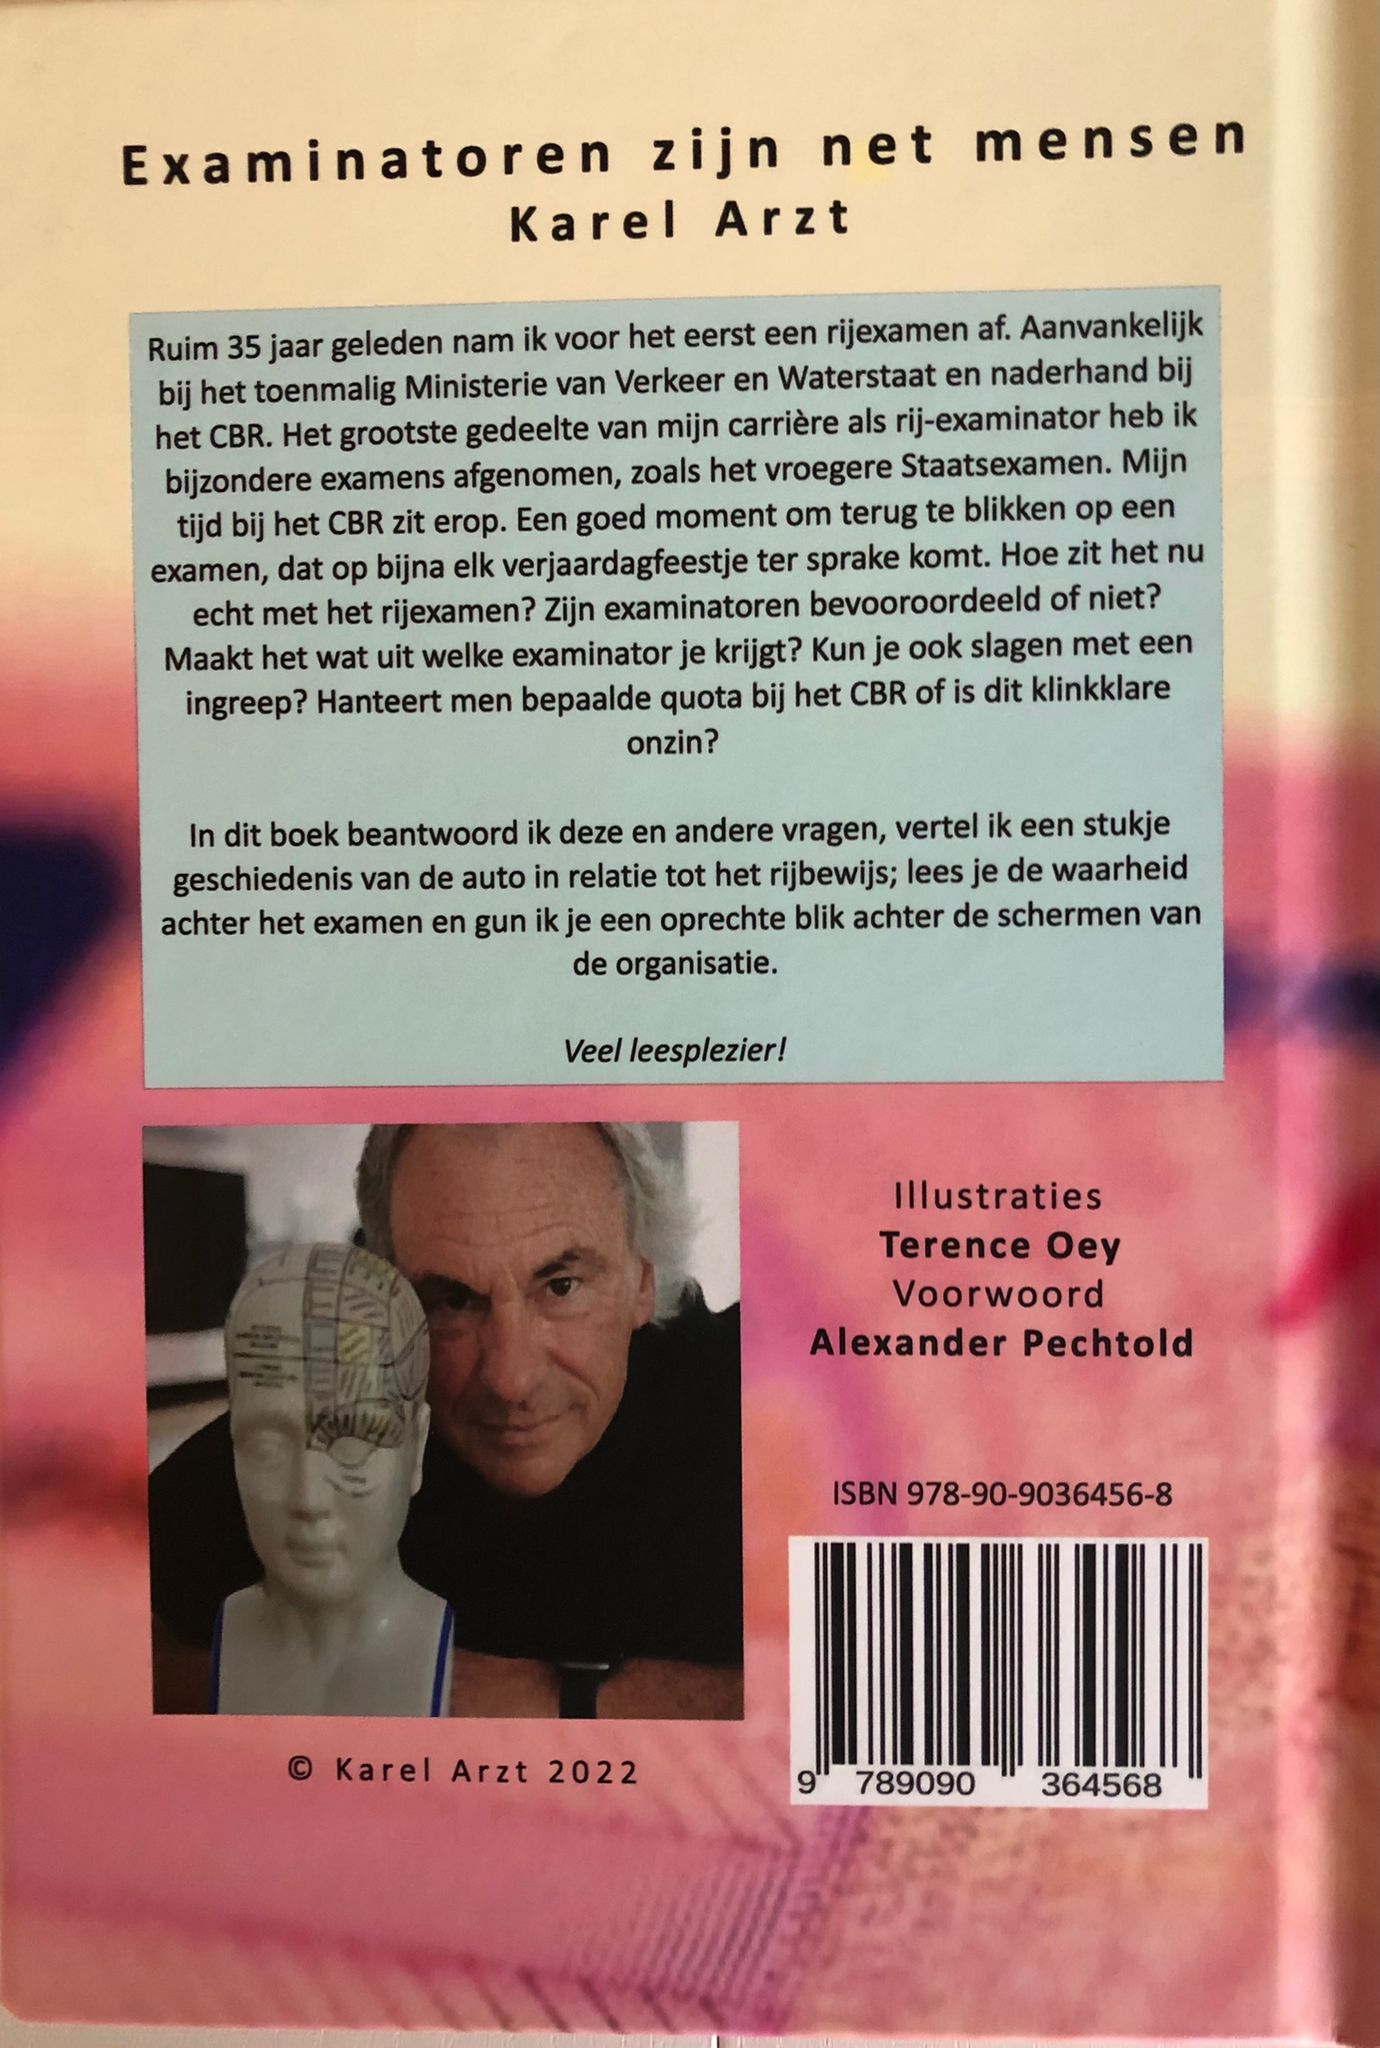 Karel Arzt over zijn nieuwe boek ‘Examinatoren zijn net mensen’